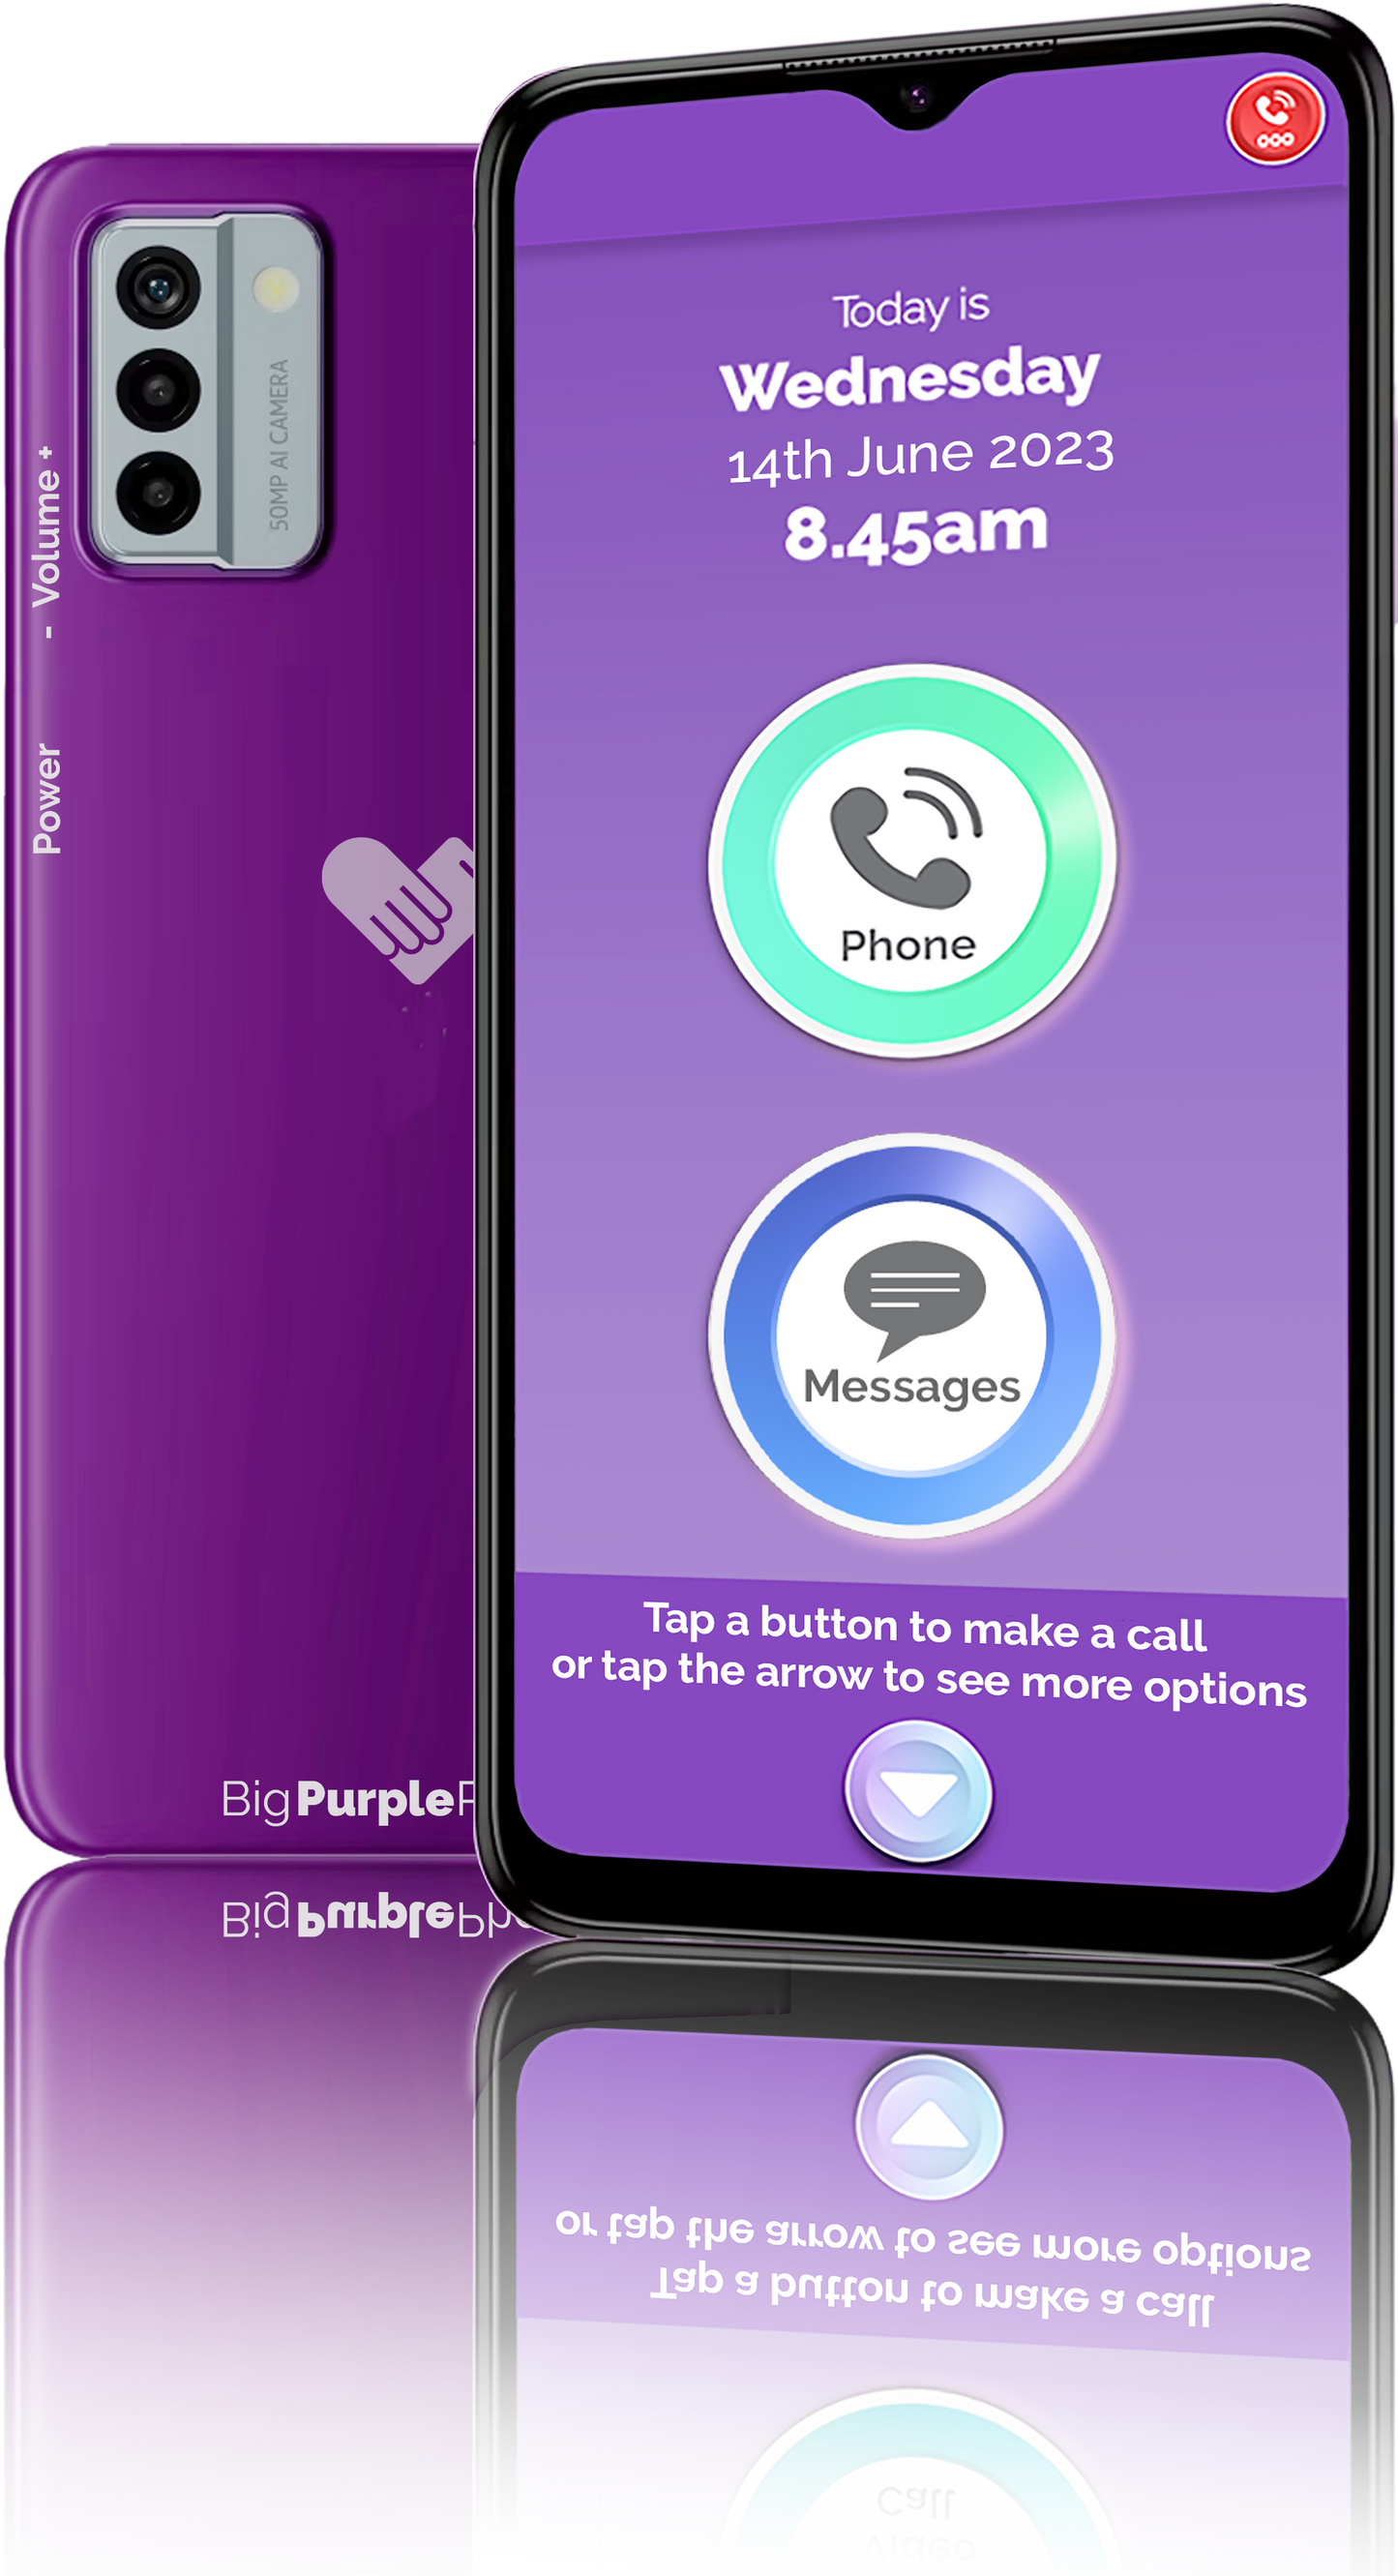 BigPurplePhone Talk&Text PLUS Prepaid Plan